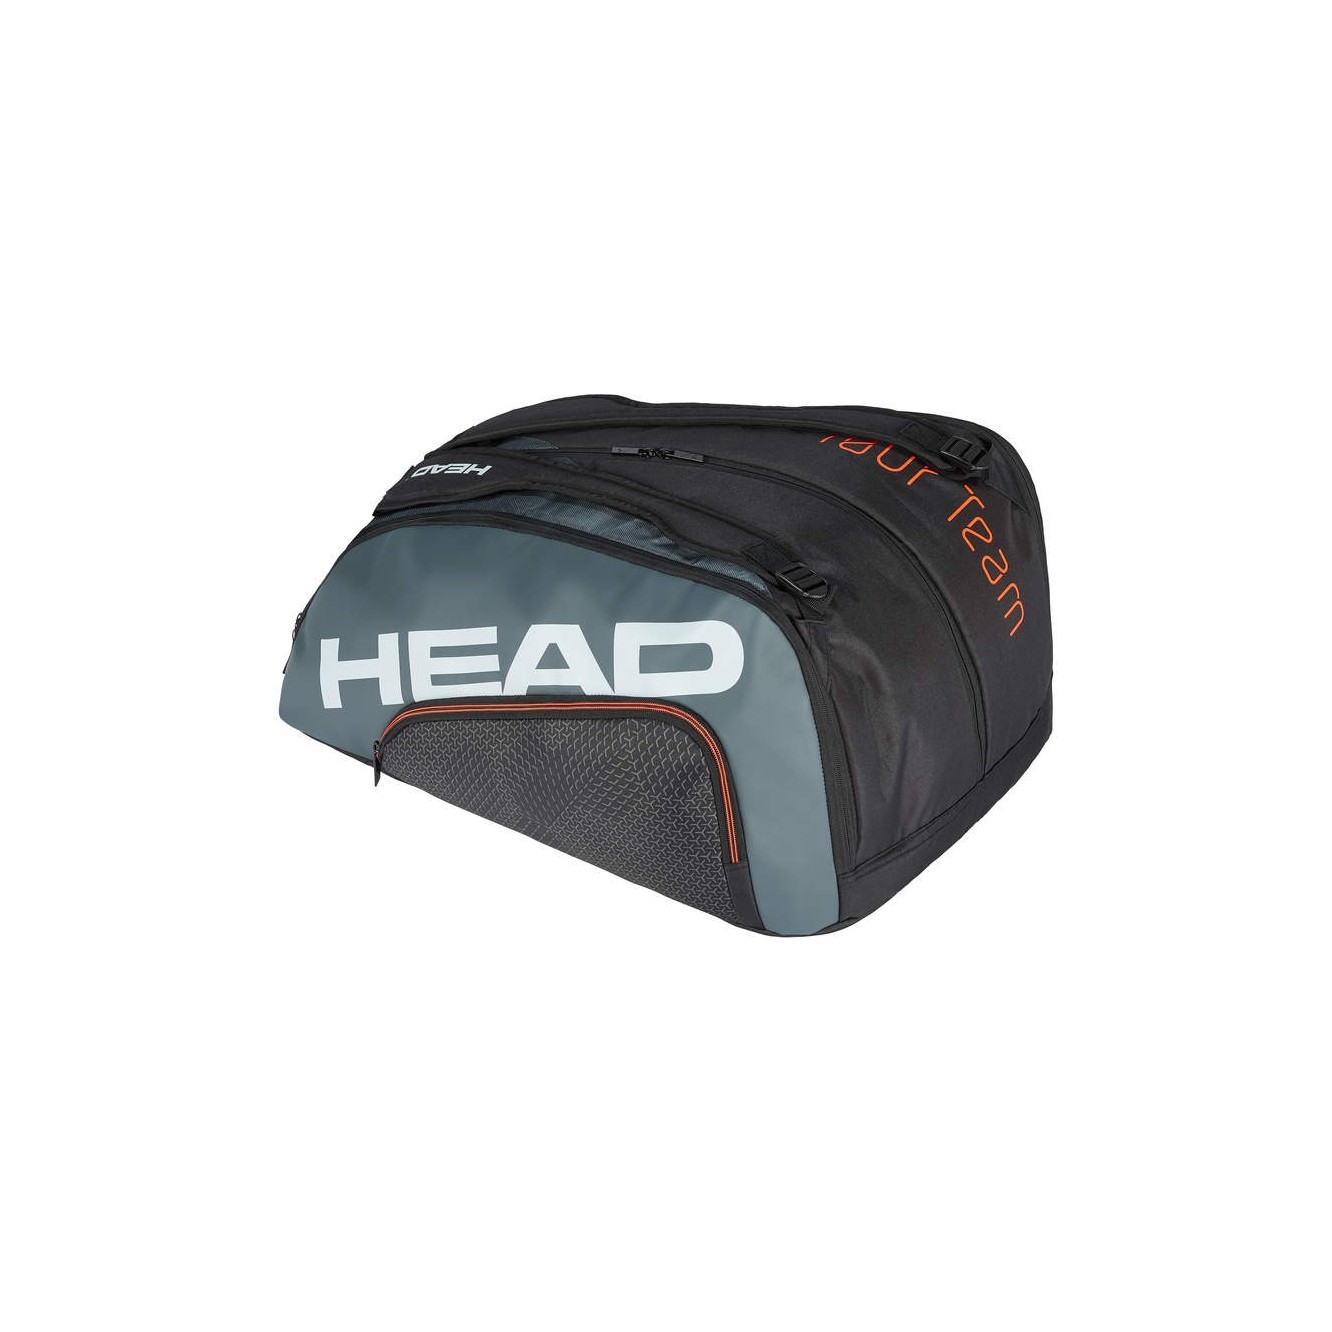 Paletero de pádel de la marca Head